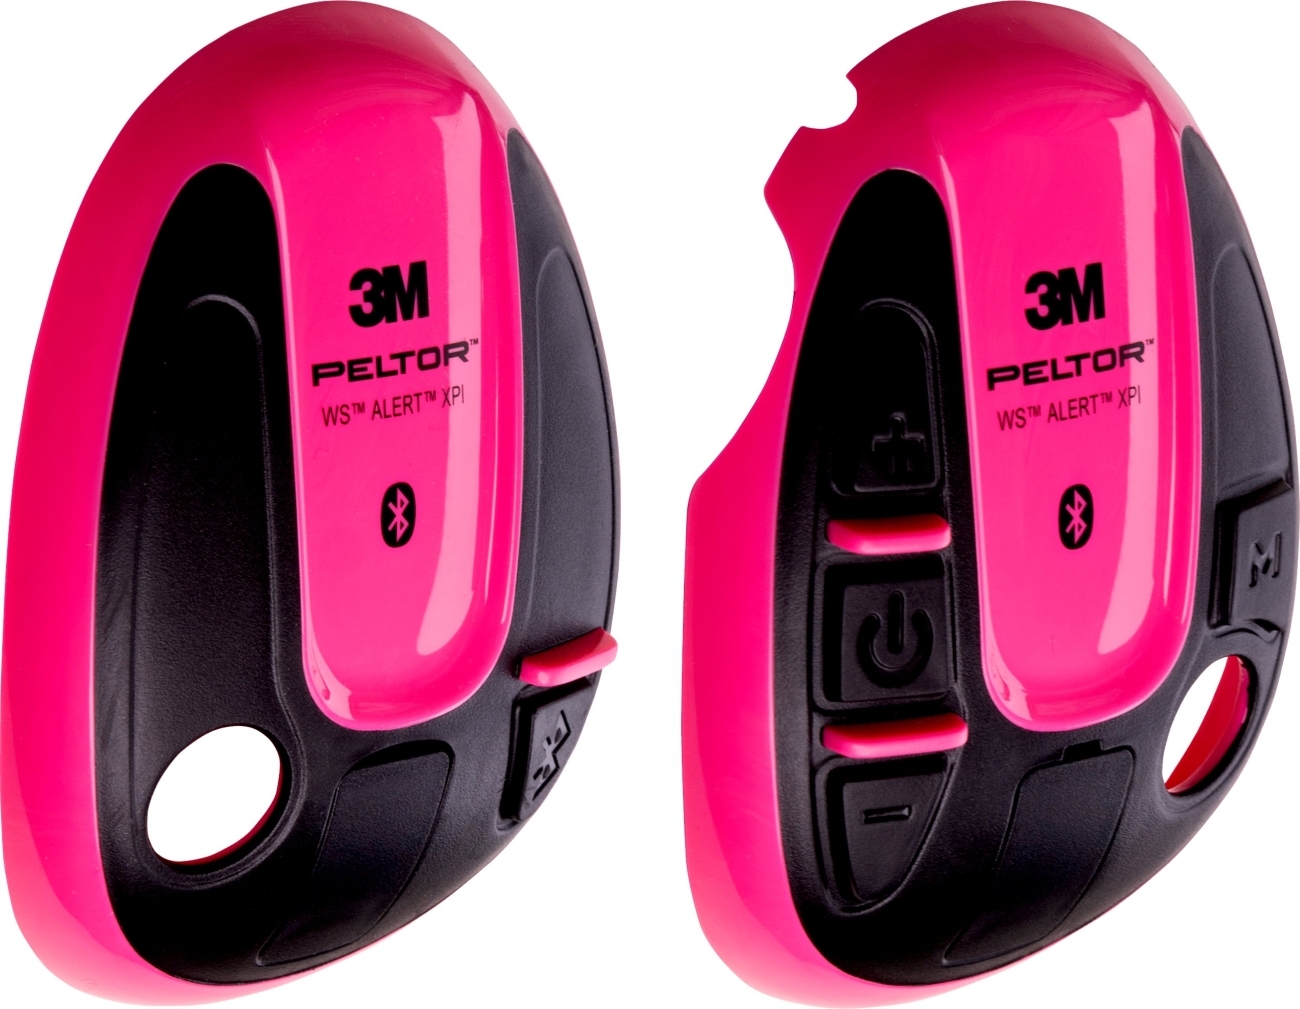 3M PELTOR beschermhoes voor WS ALERT headsets, roze, 1 paar (links rechts), 210300-664-RE/1